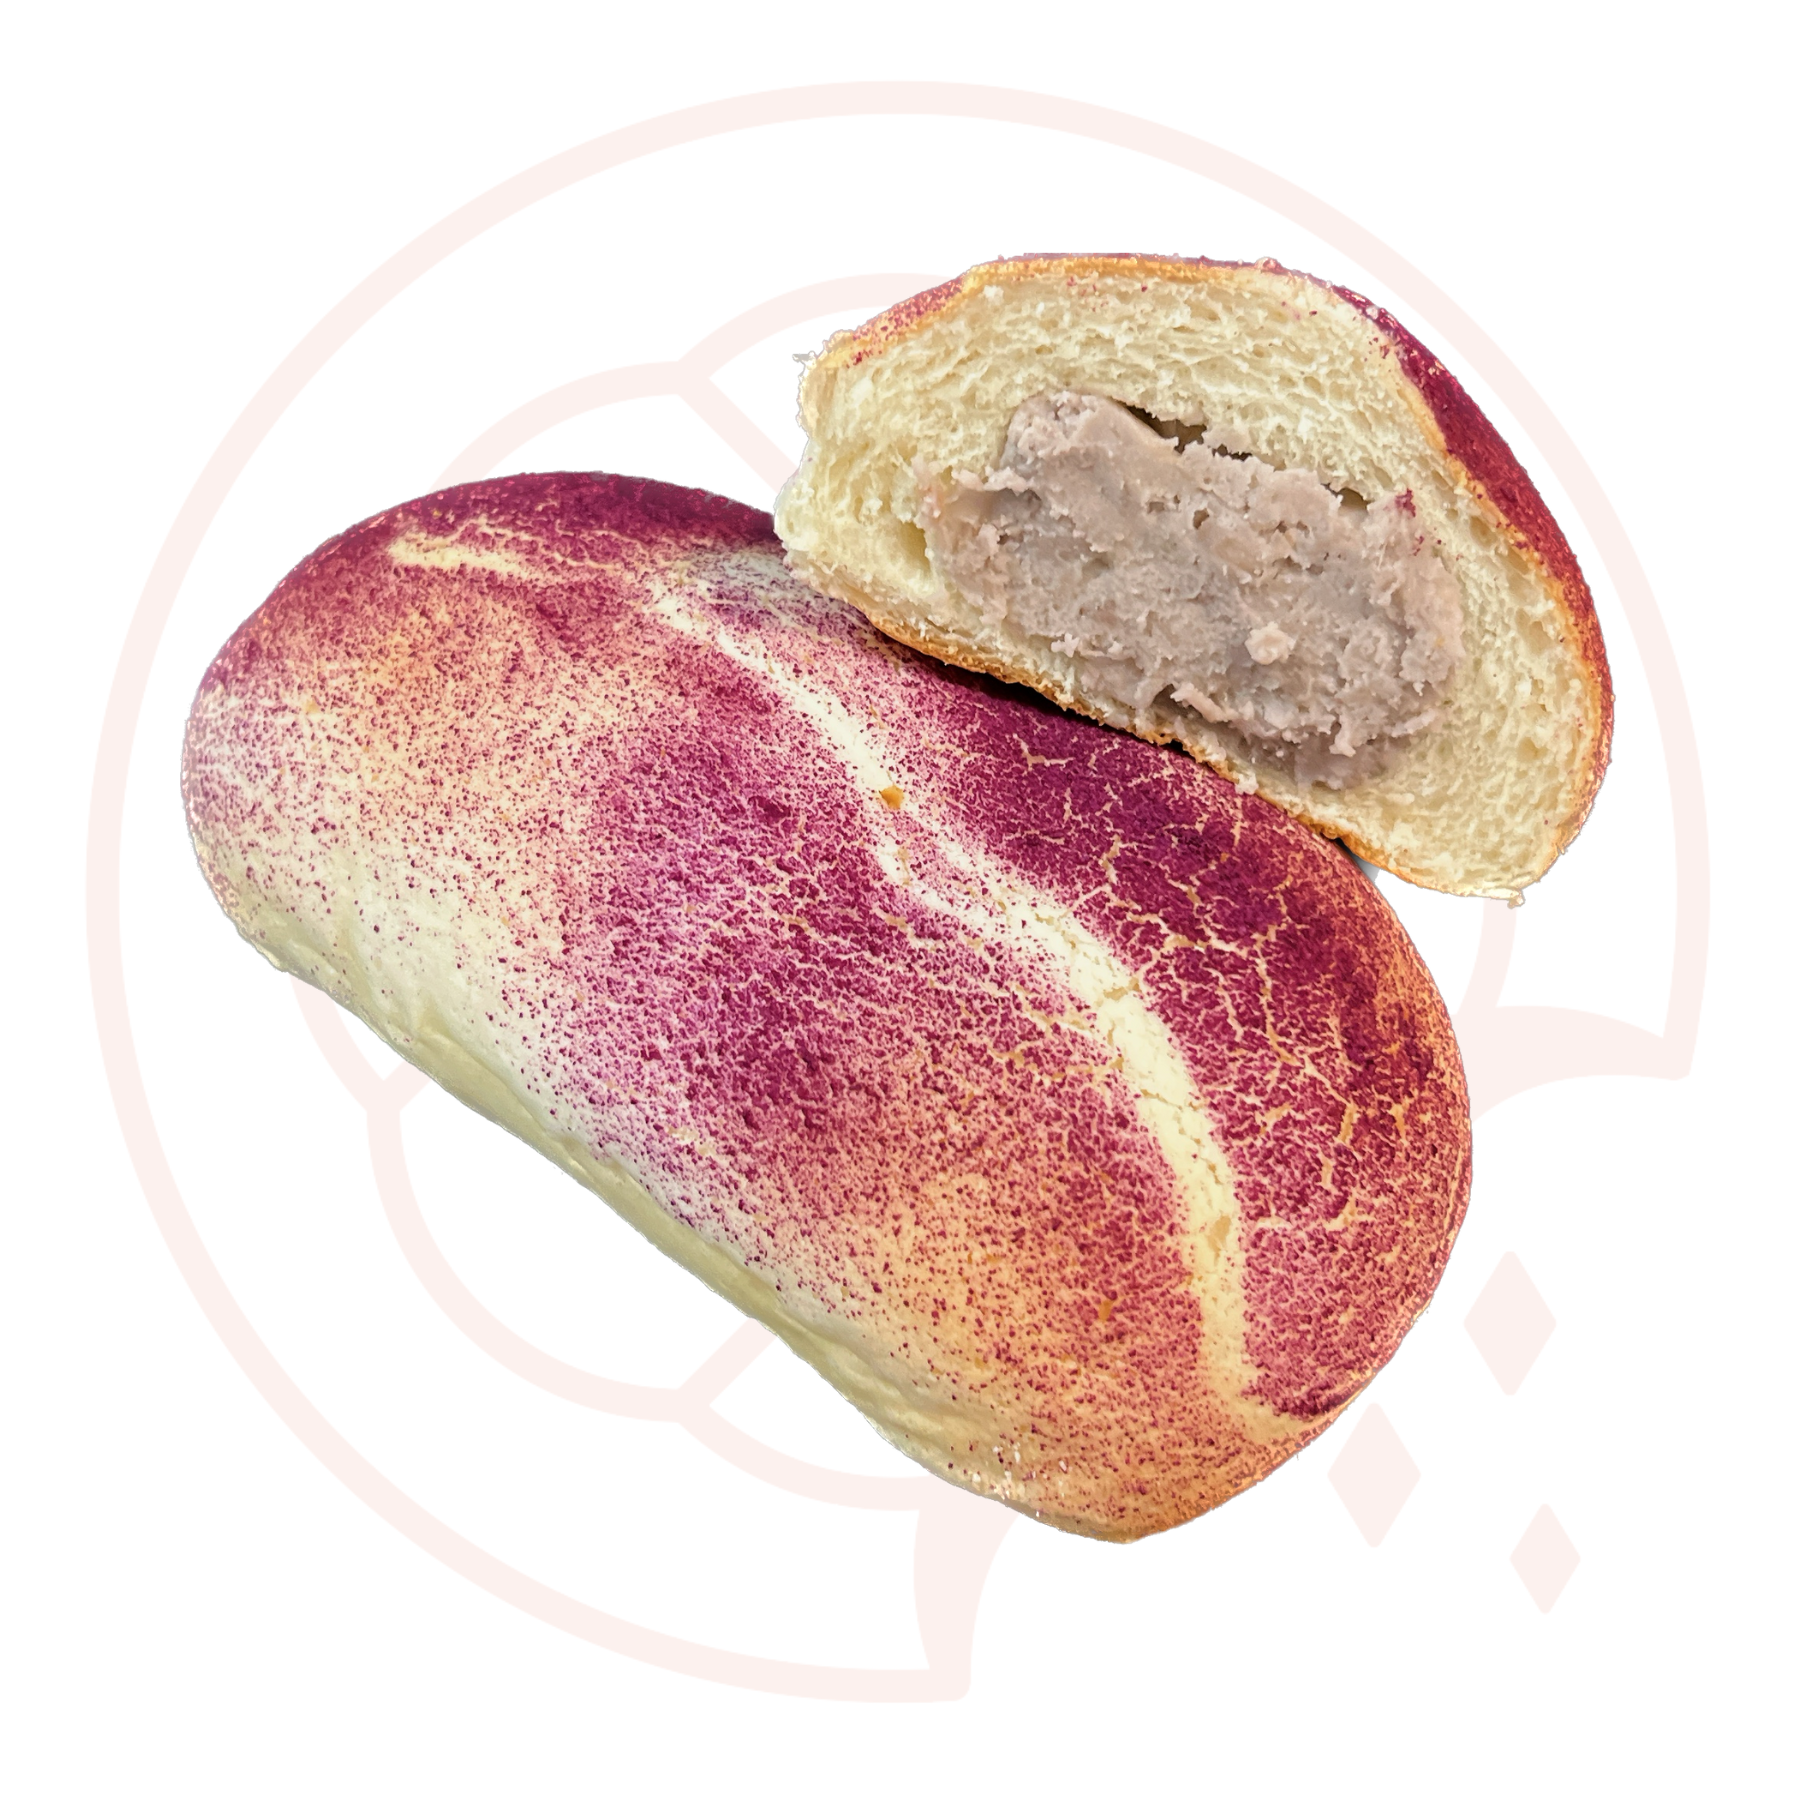 B9 - Taro Bun 芋頭山麵包